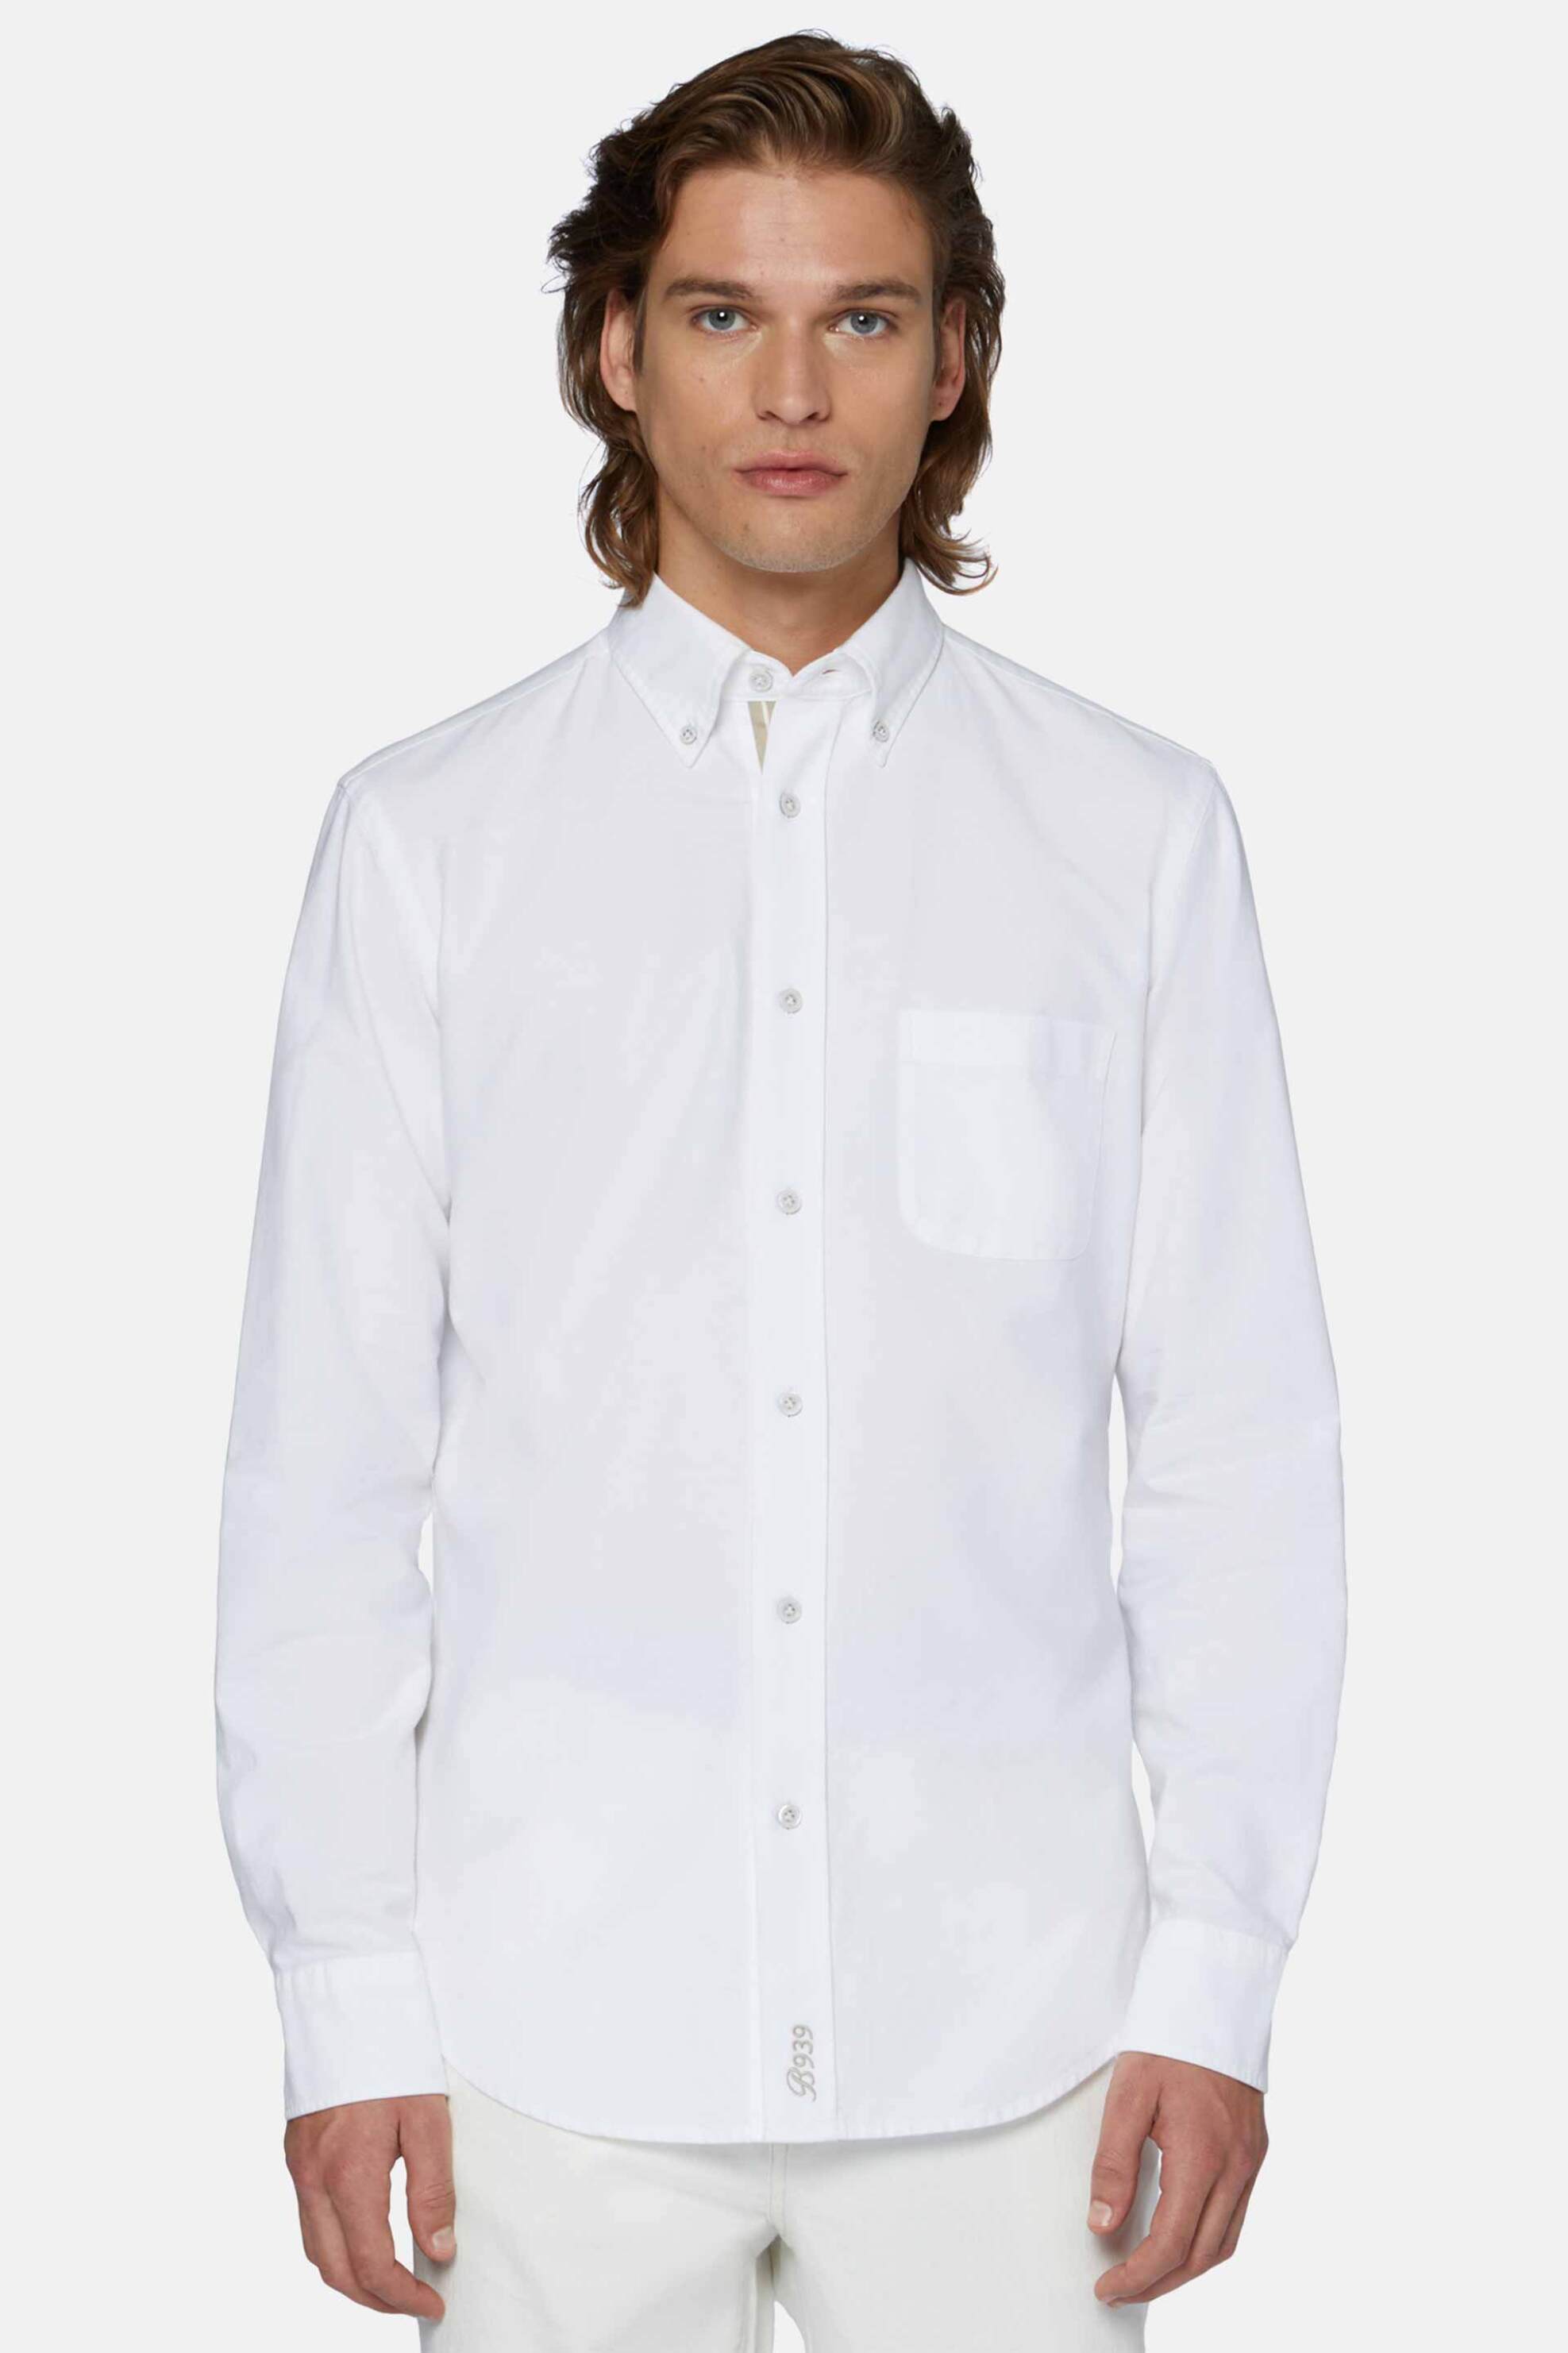 Ανδρική Μόδα > Ανδρικά Ρούχα > Ανδρικά Πουκάμισα > Ανδρικά Πουκάμισα Casual Boggi Milano ανδρικό πουκάμισο oxford button down με τσέπη Regular Fit - BO24P016001 Λευκό